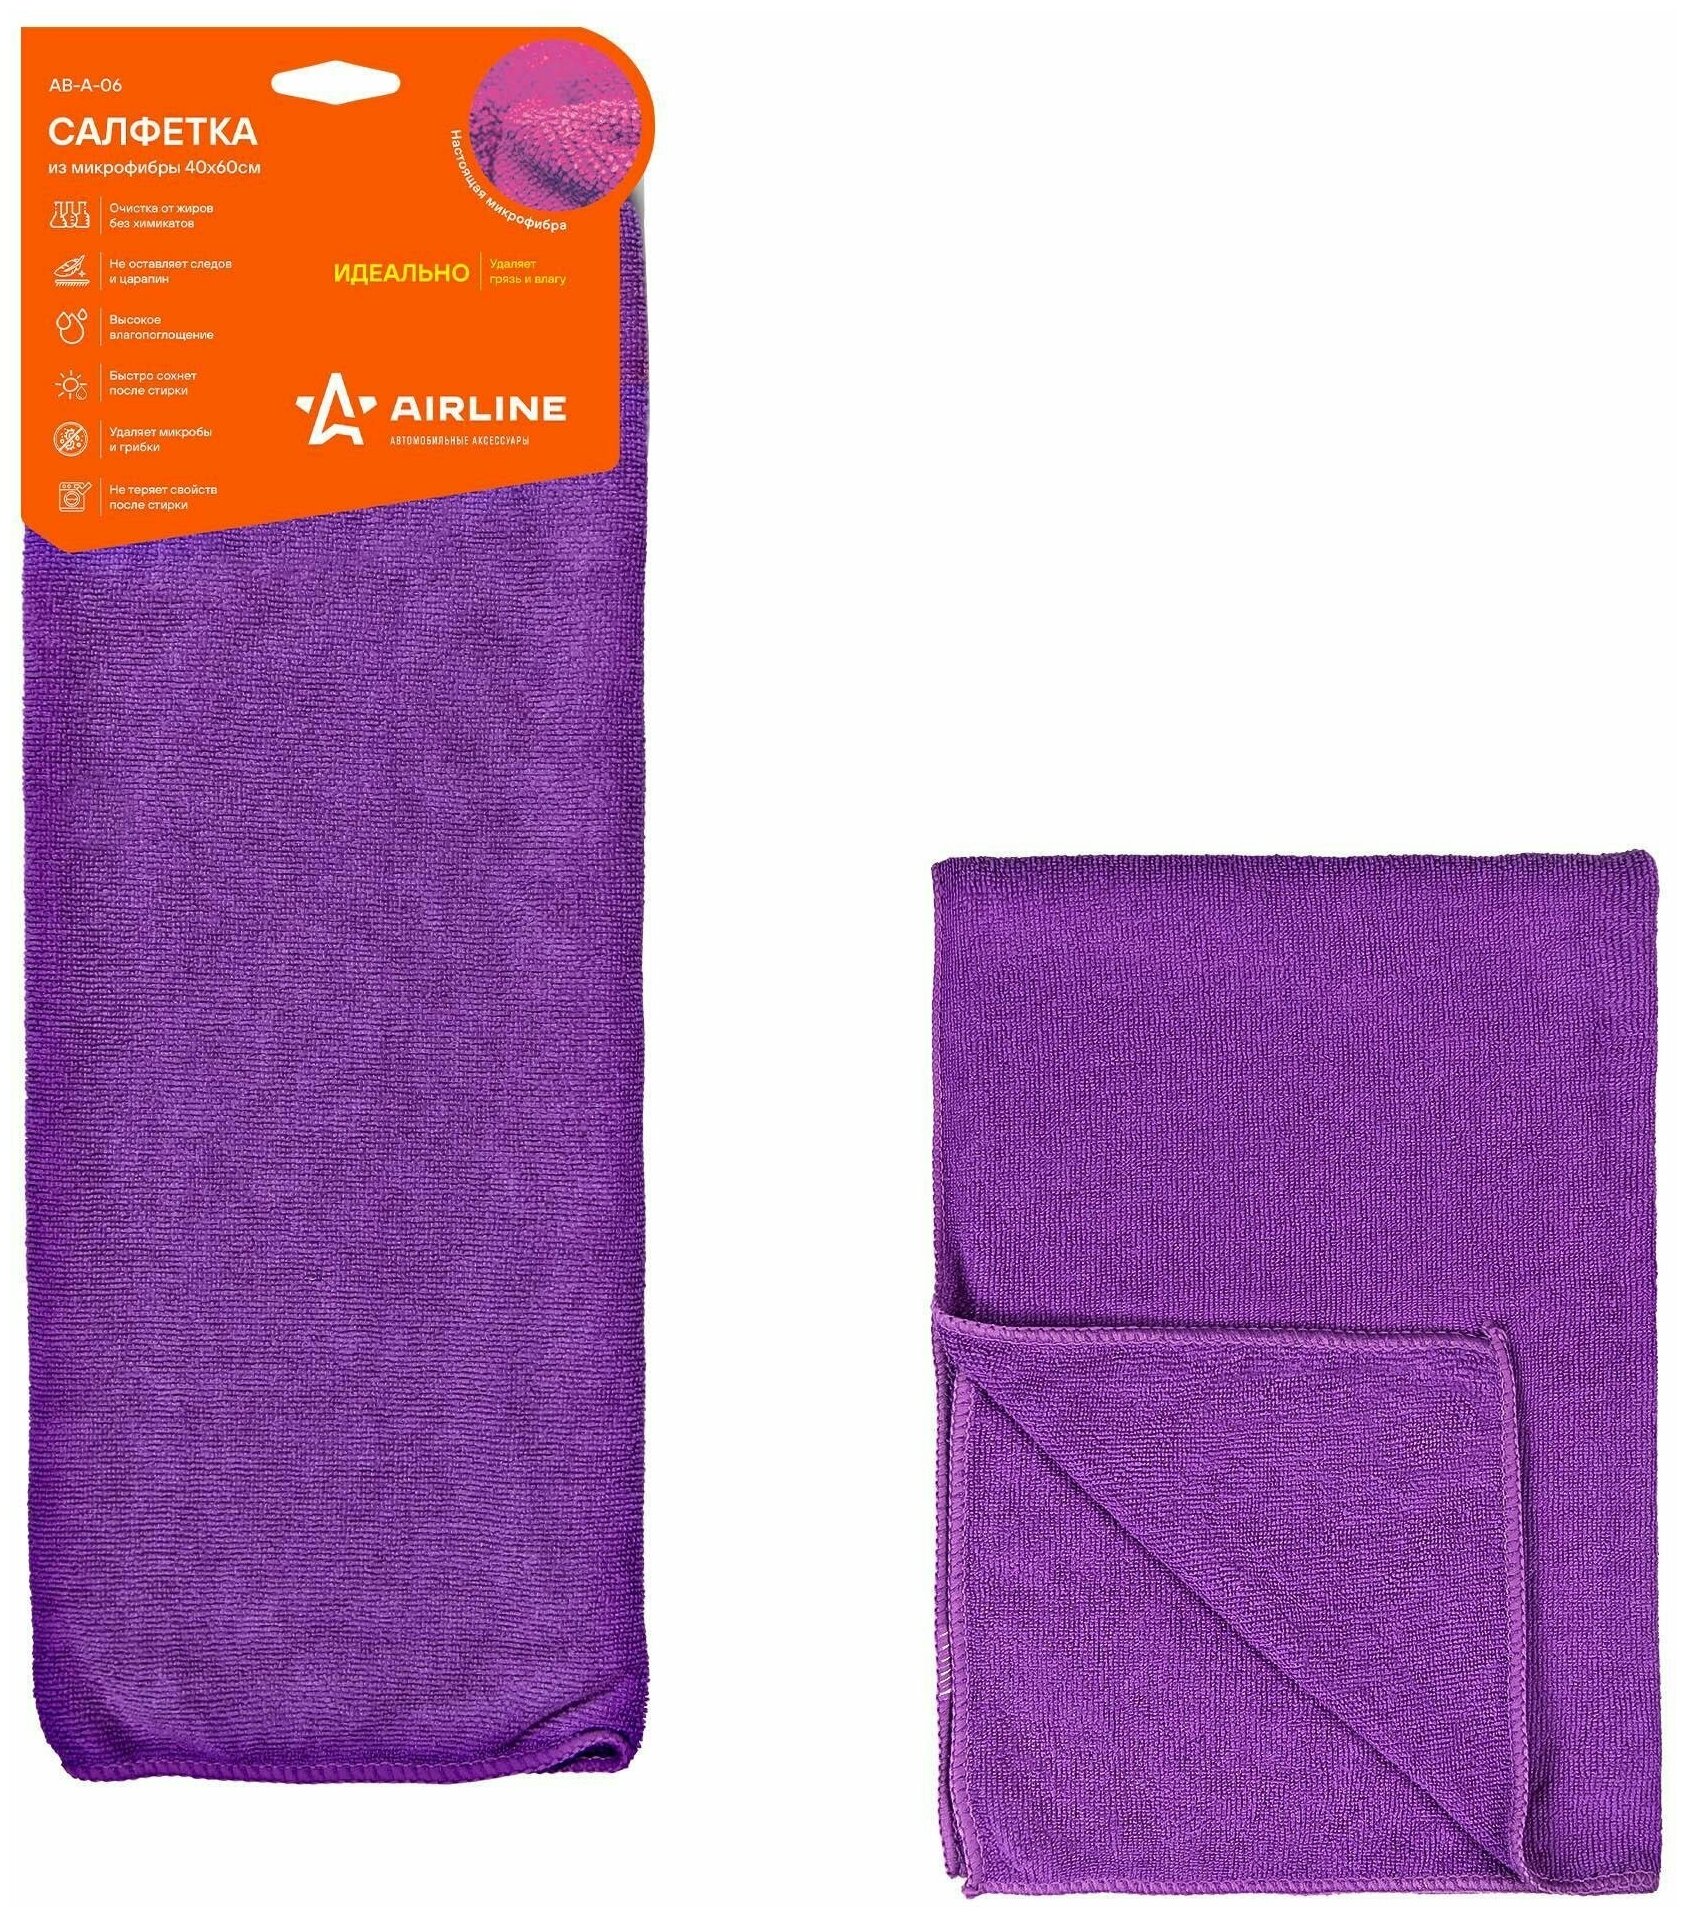 Салфетка из микрофибры фиолетовая (40*60 см)